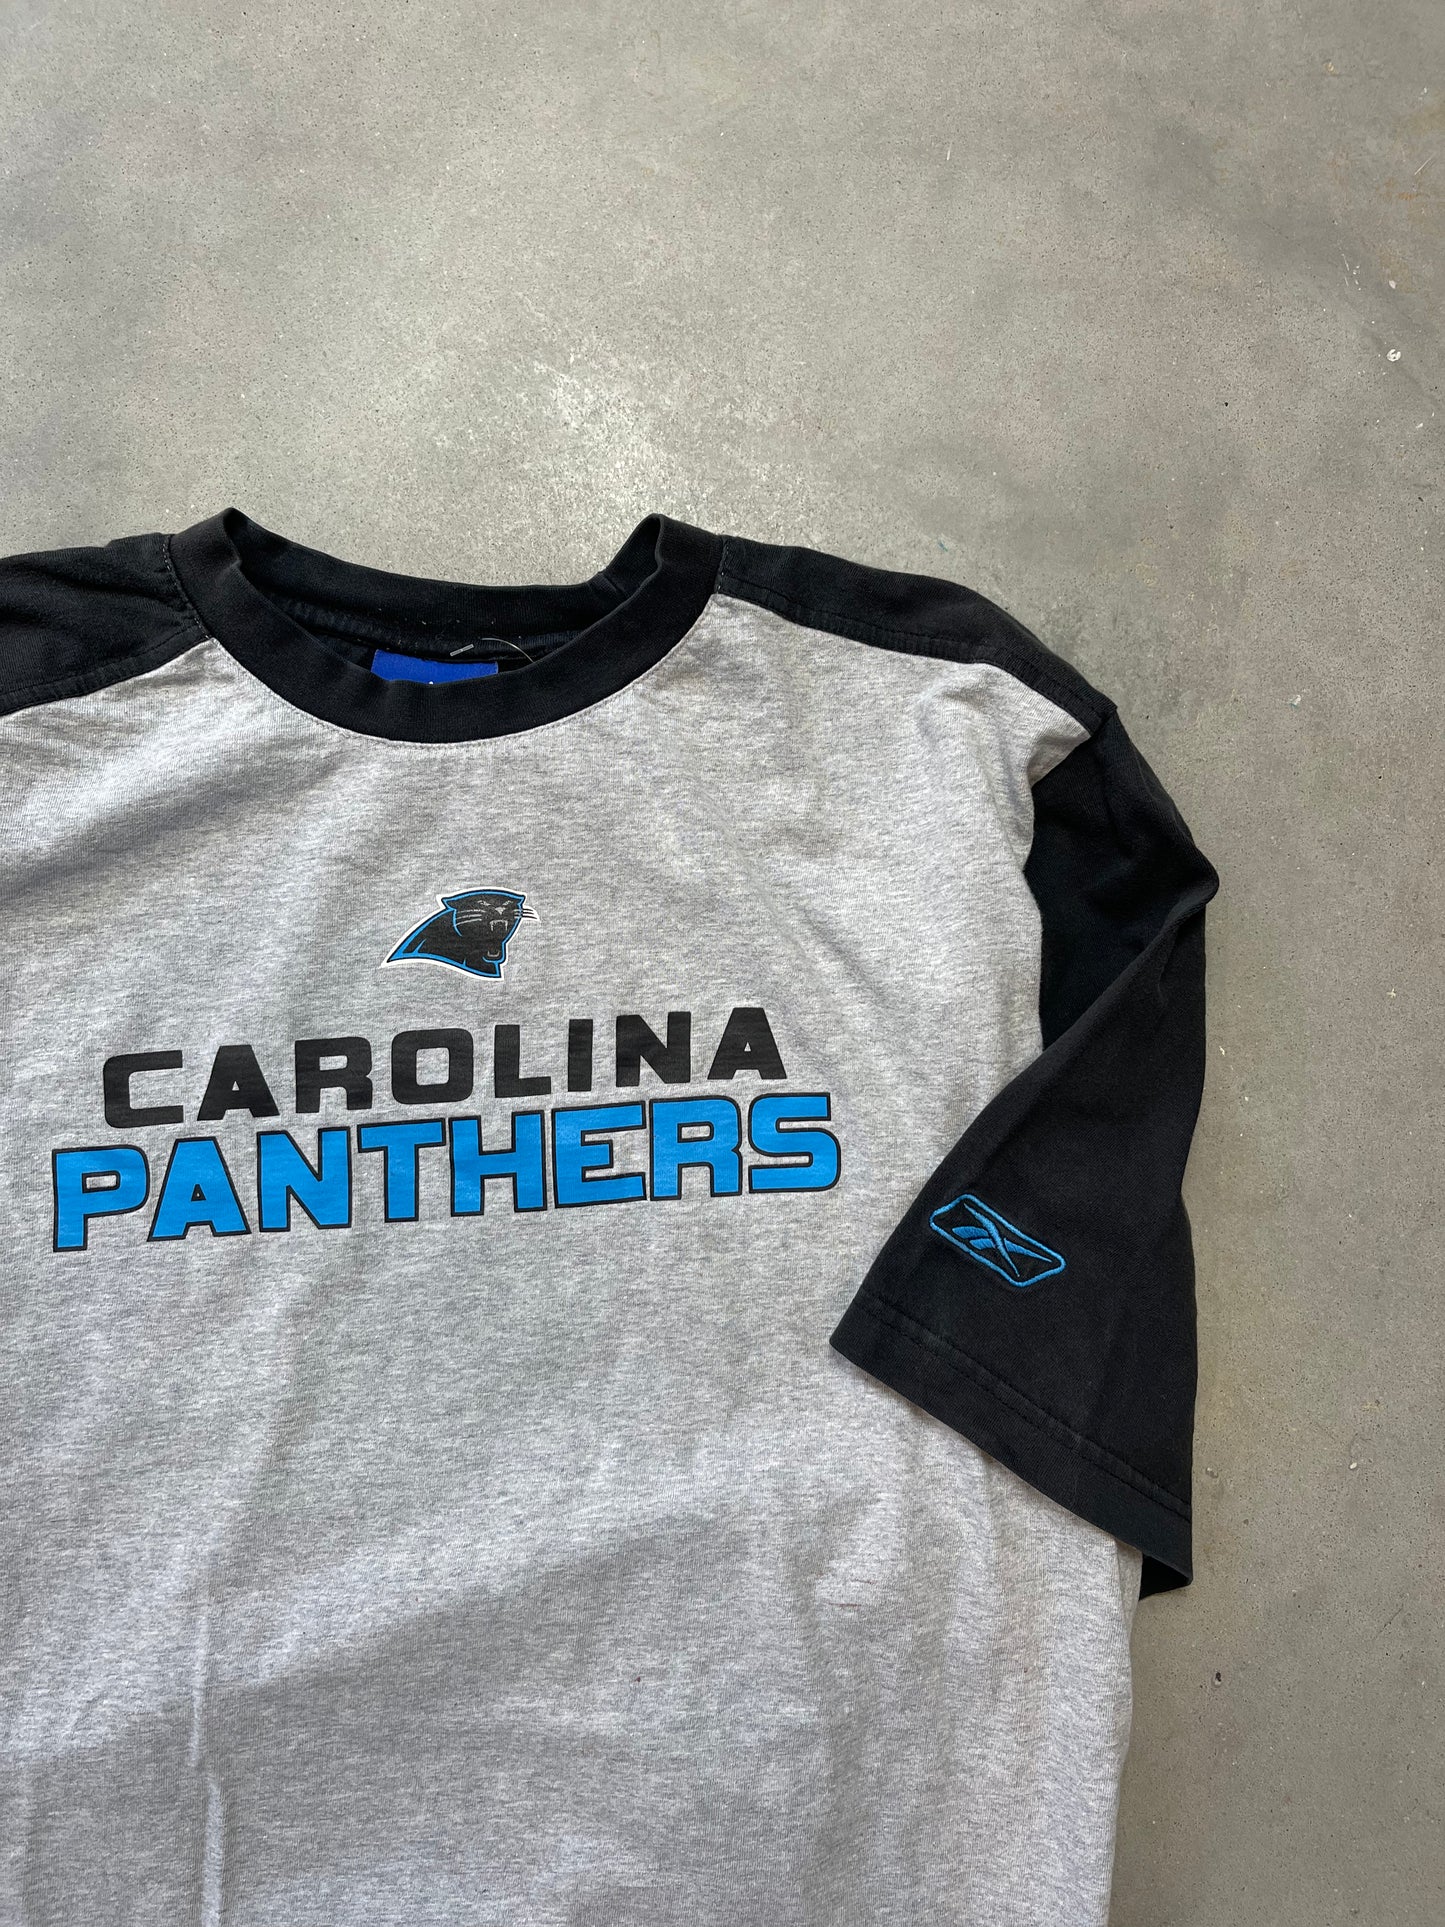 00's Carolina Panthers Two Tone Reebok Vintage NFL Shirt (Large)